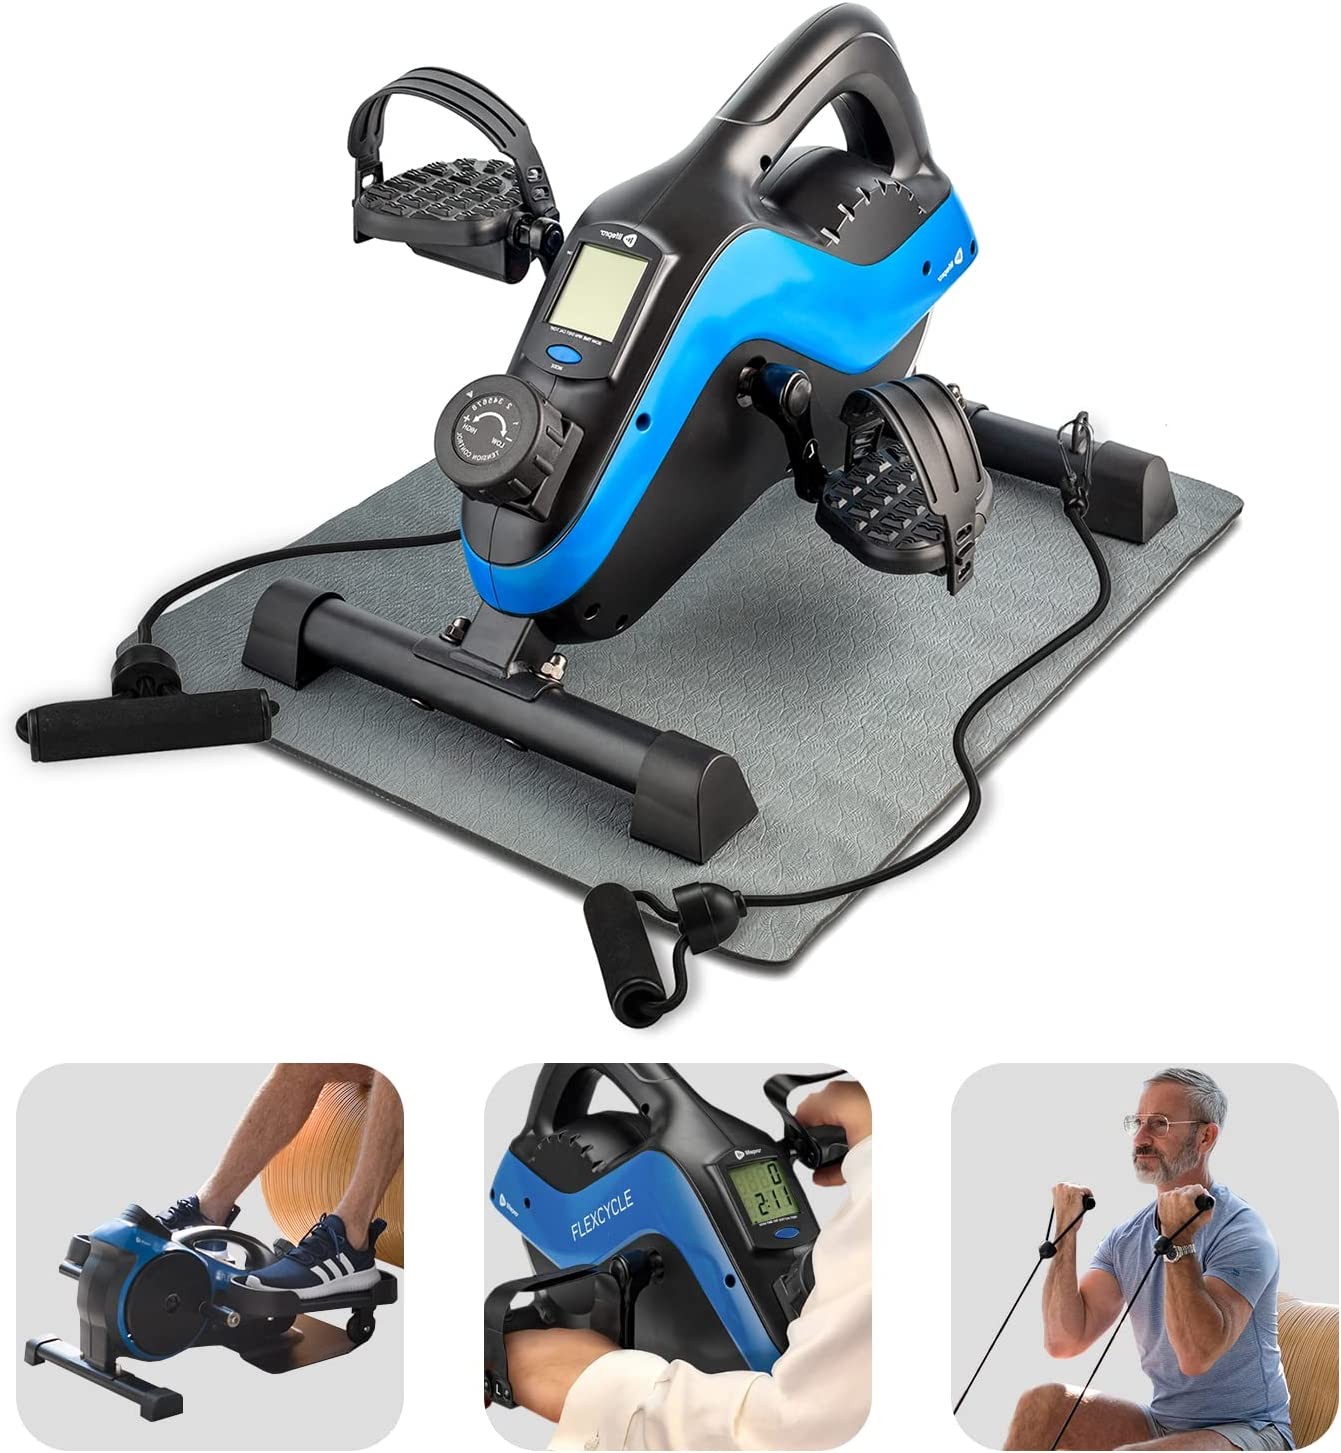 LifePro 3-in-1 Under Desk Bike Pedal Exerciser with Resistance Bands, Arm & Leg Mini Exercise Bike Desk Exercise Equipment,Foot Peddler Exerciser for Seniors